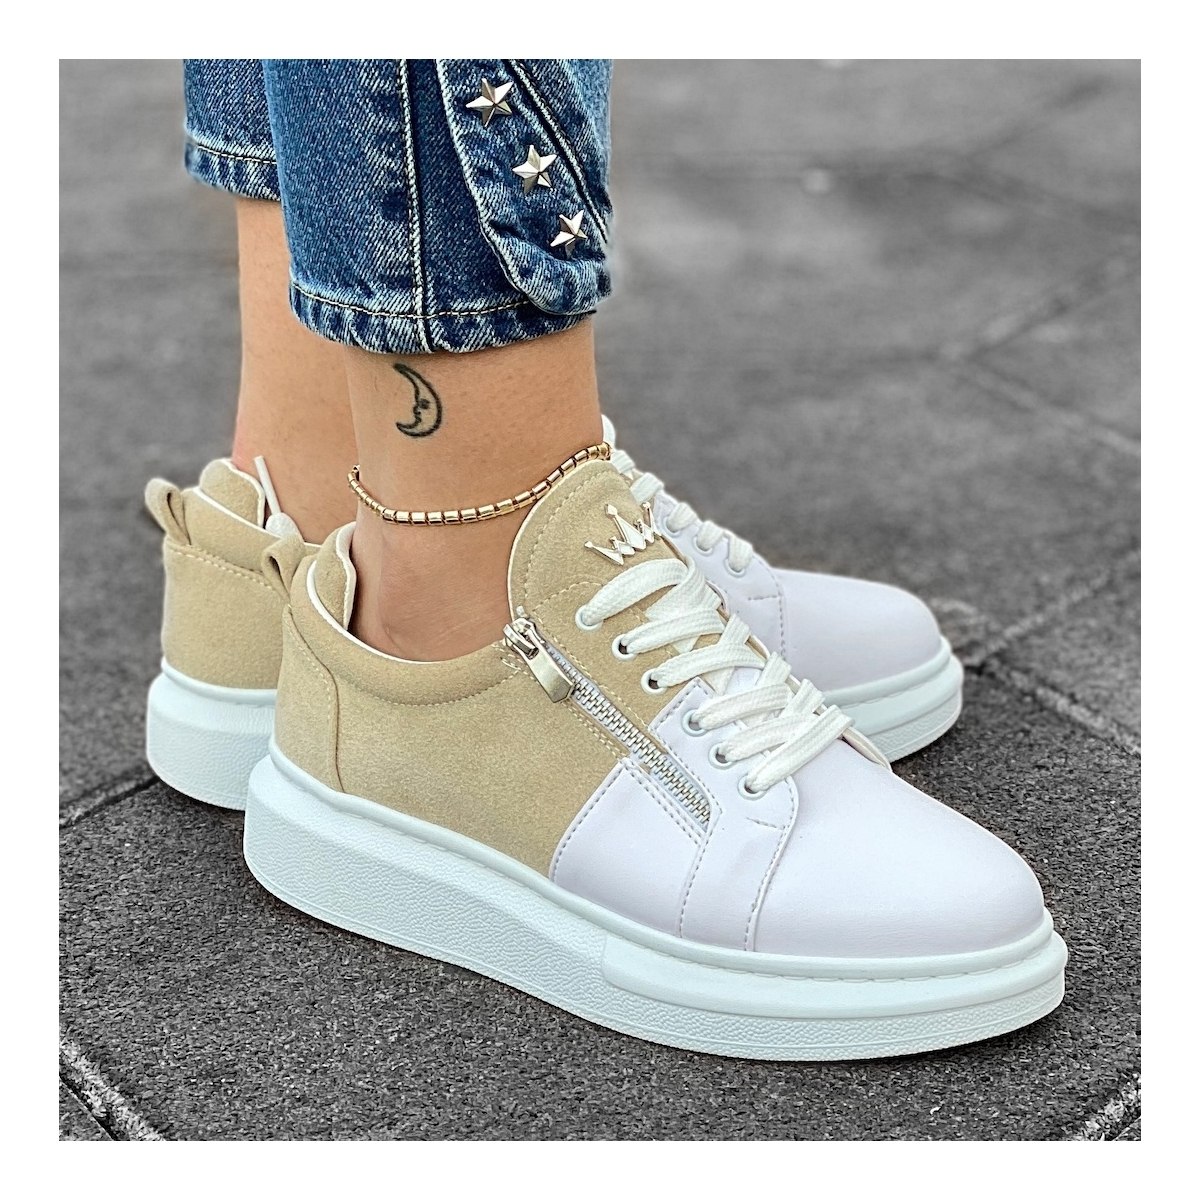 Women's Hype Sole Zipped Style Sneakers In Latte-White